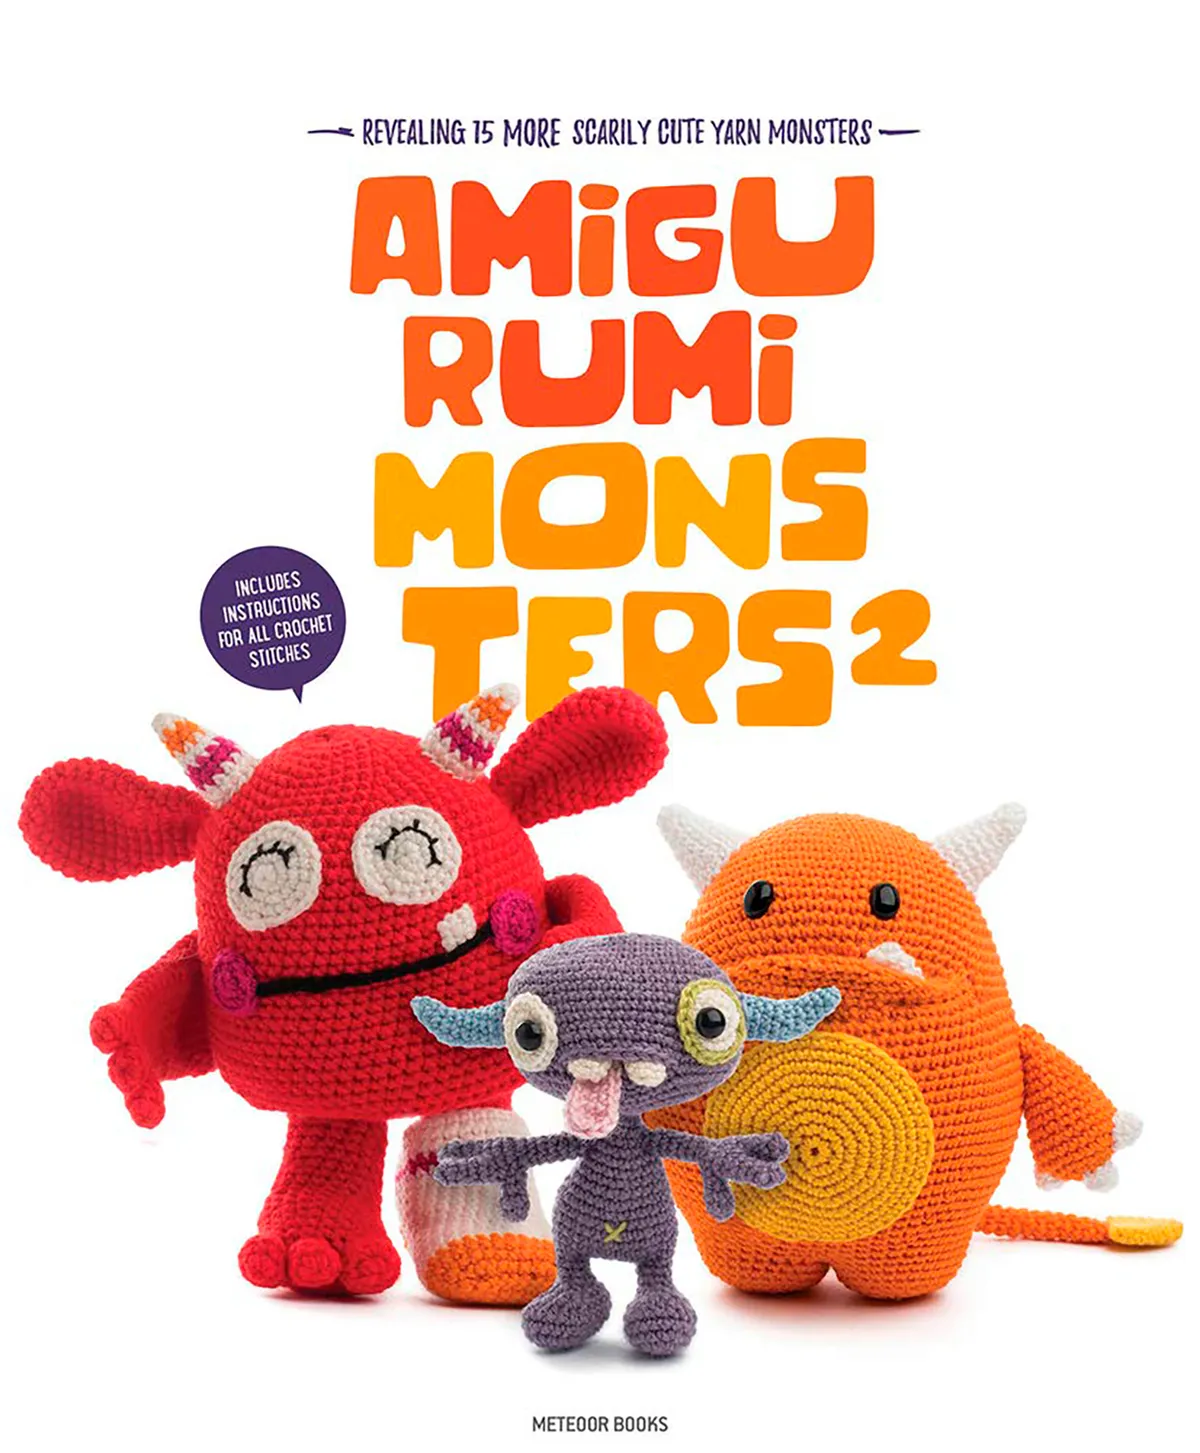 amigurumi_monsters_amigurumi_book